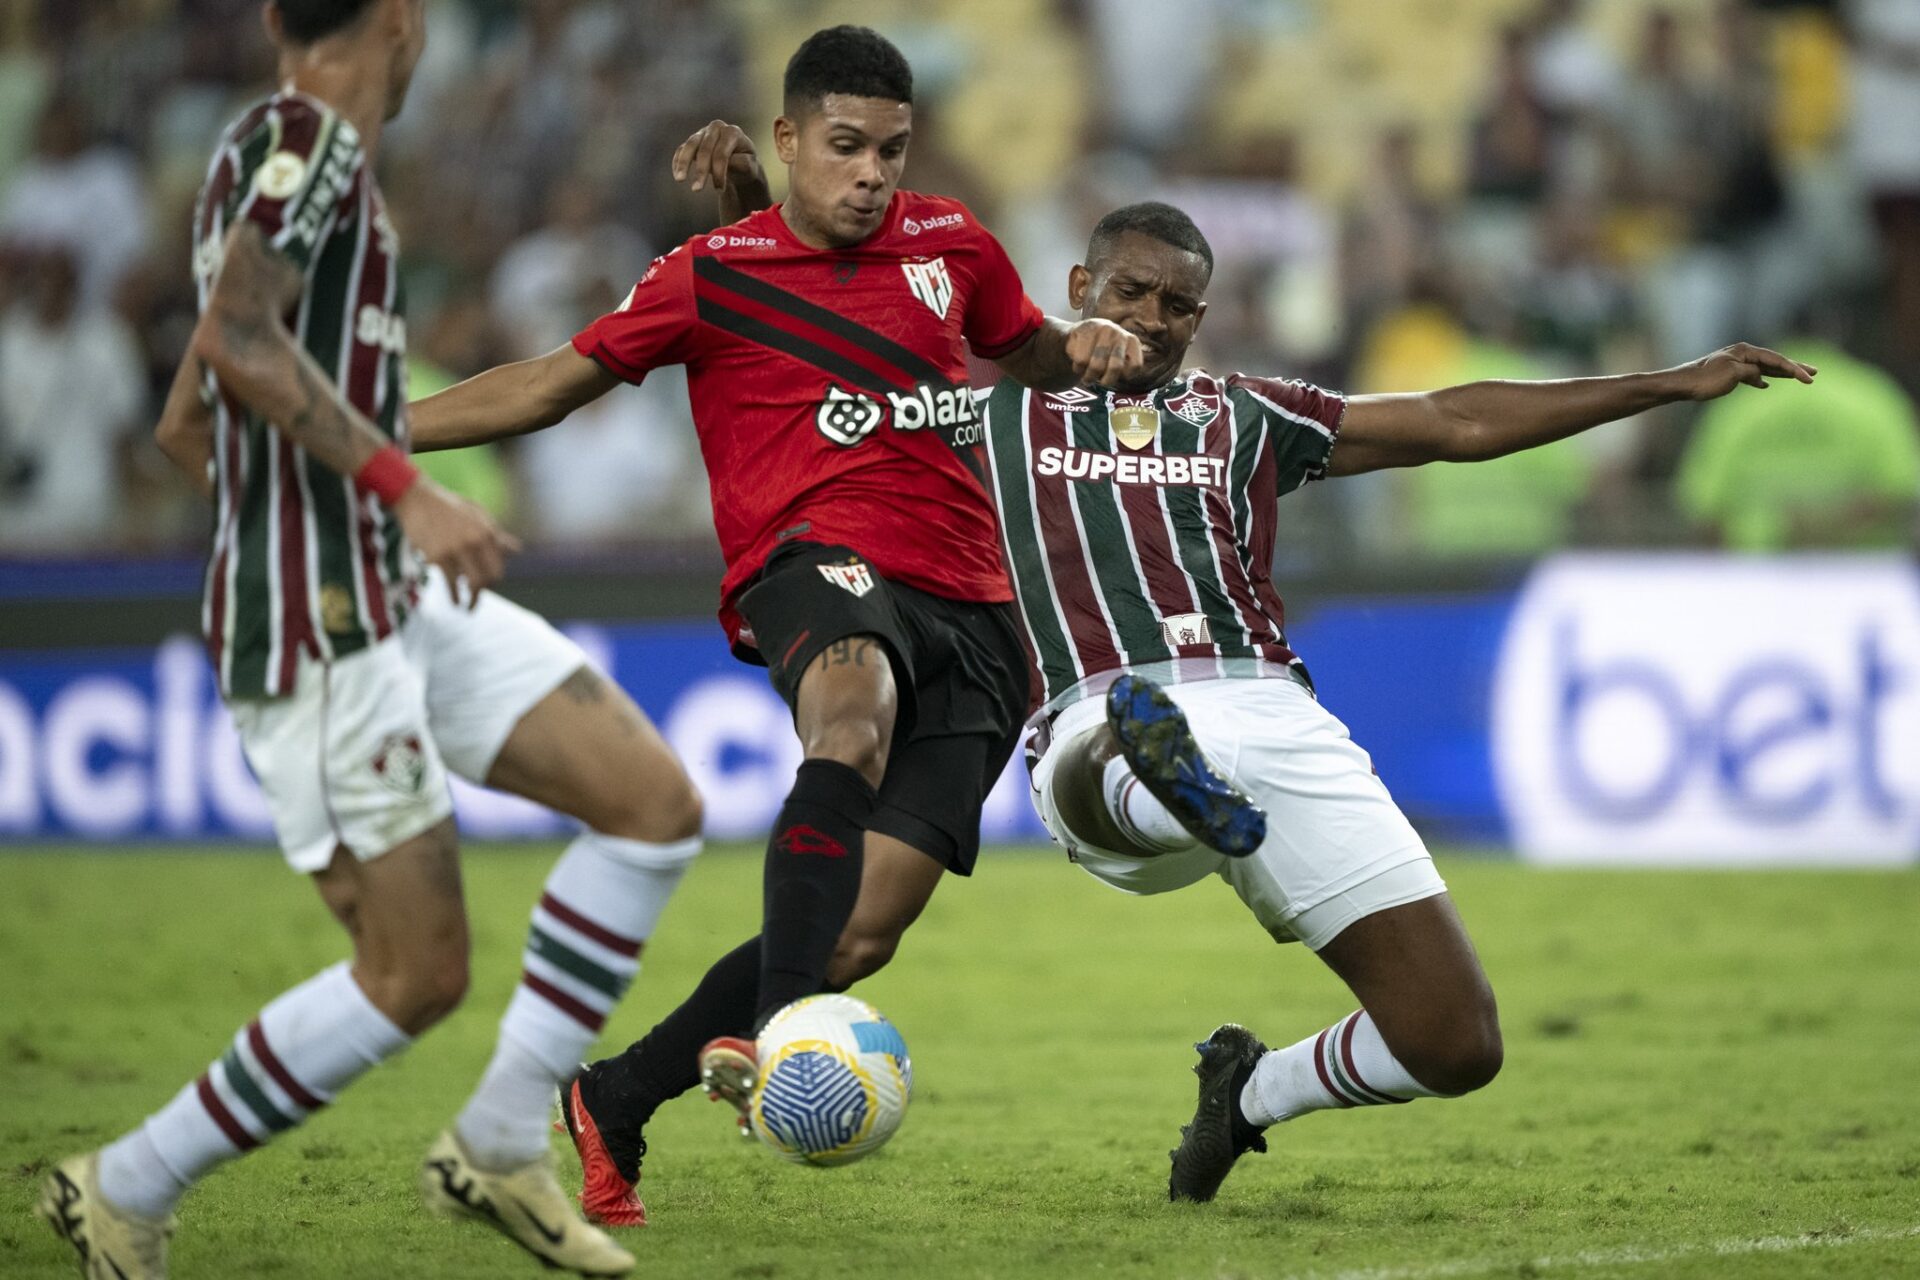 Derrota em casa amplia crise e coloca Fluminense na zona de rebaixamento